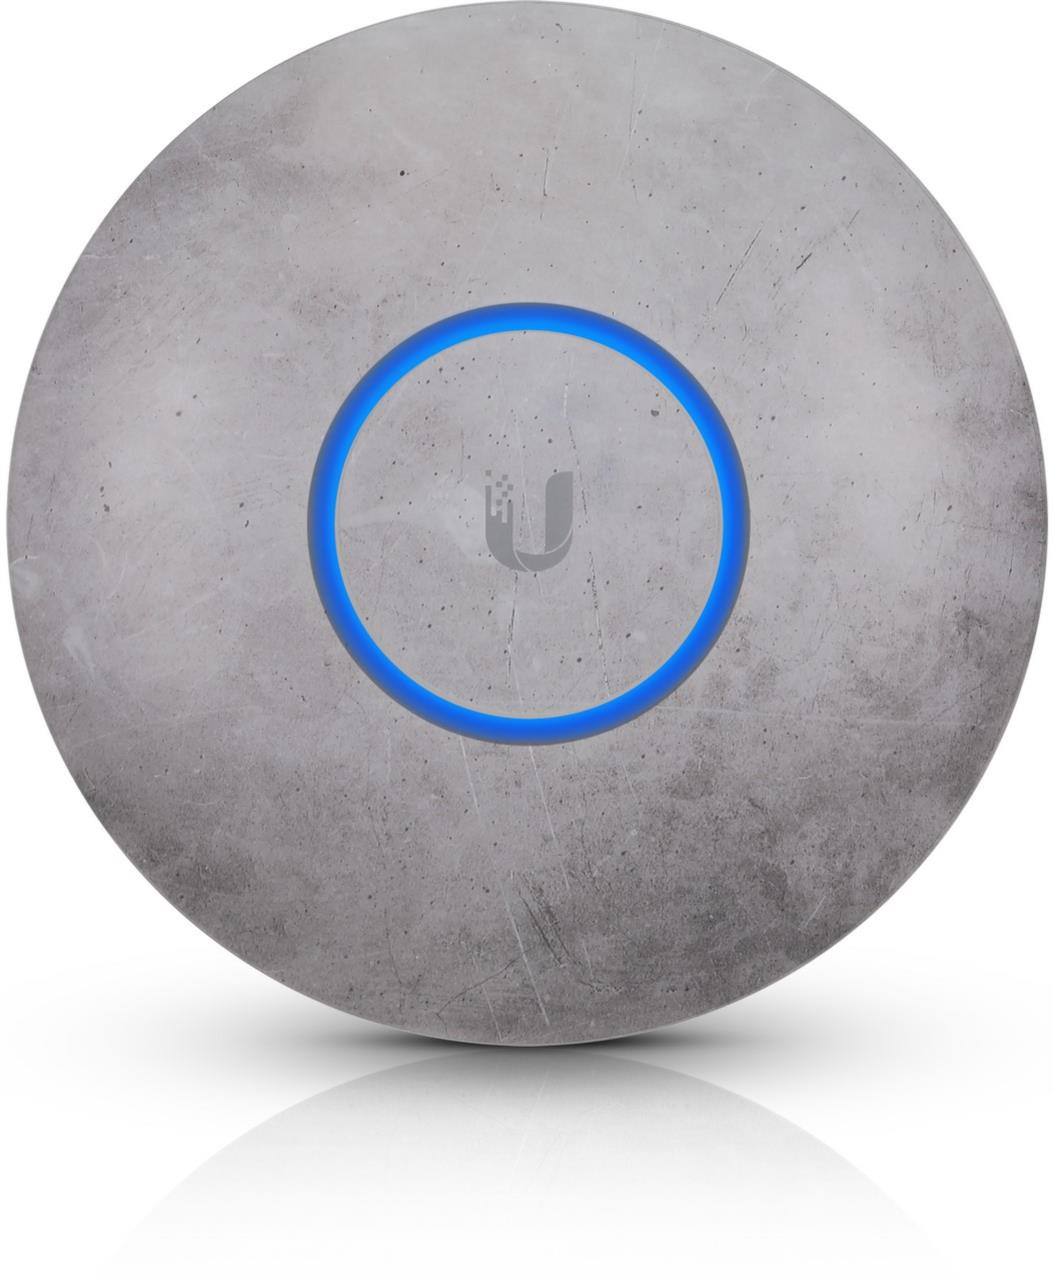 UniFi nHD-Cover für UAP-nanoHD Access Point, 3-Pack, Beton / Concrete Design